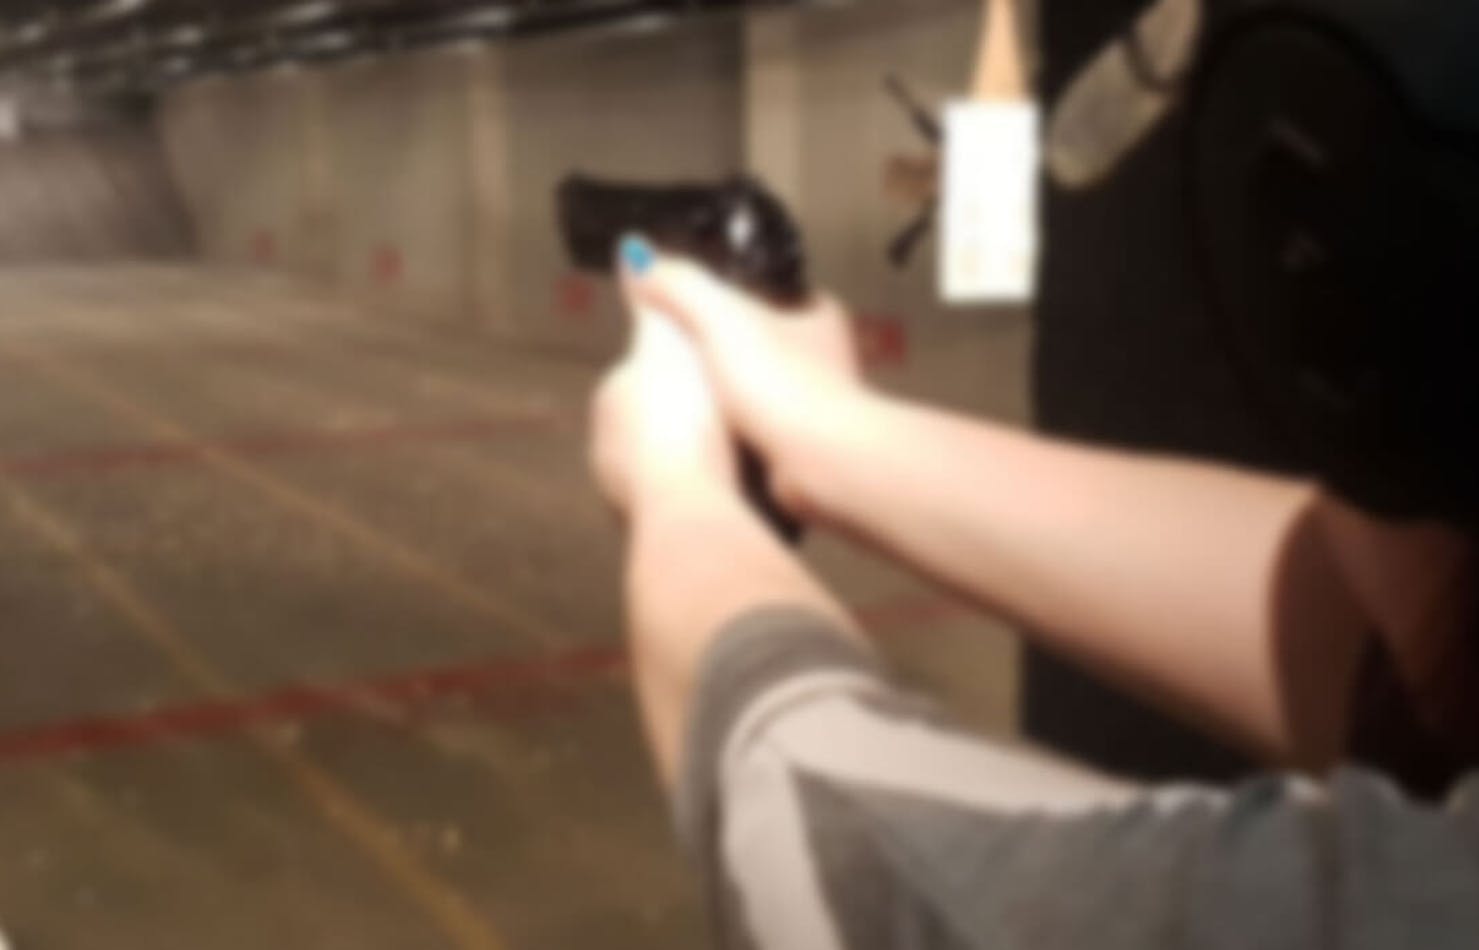 Pistol shooting at range